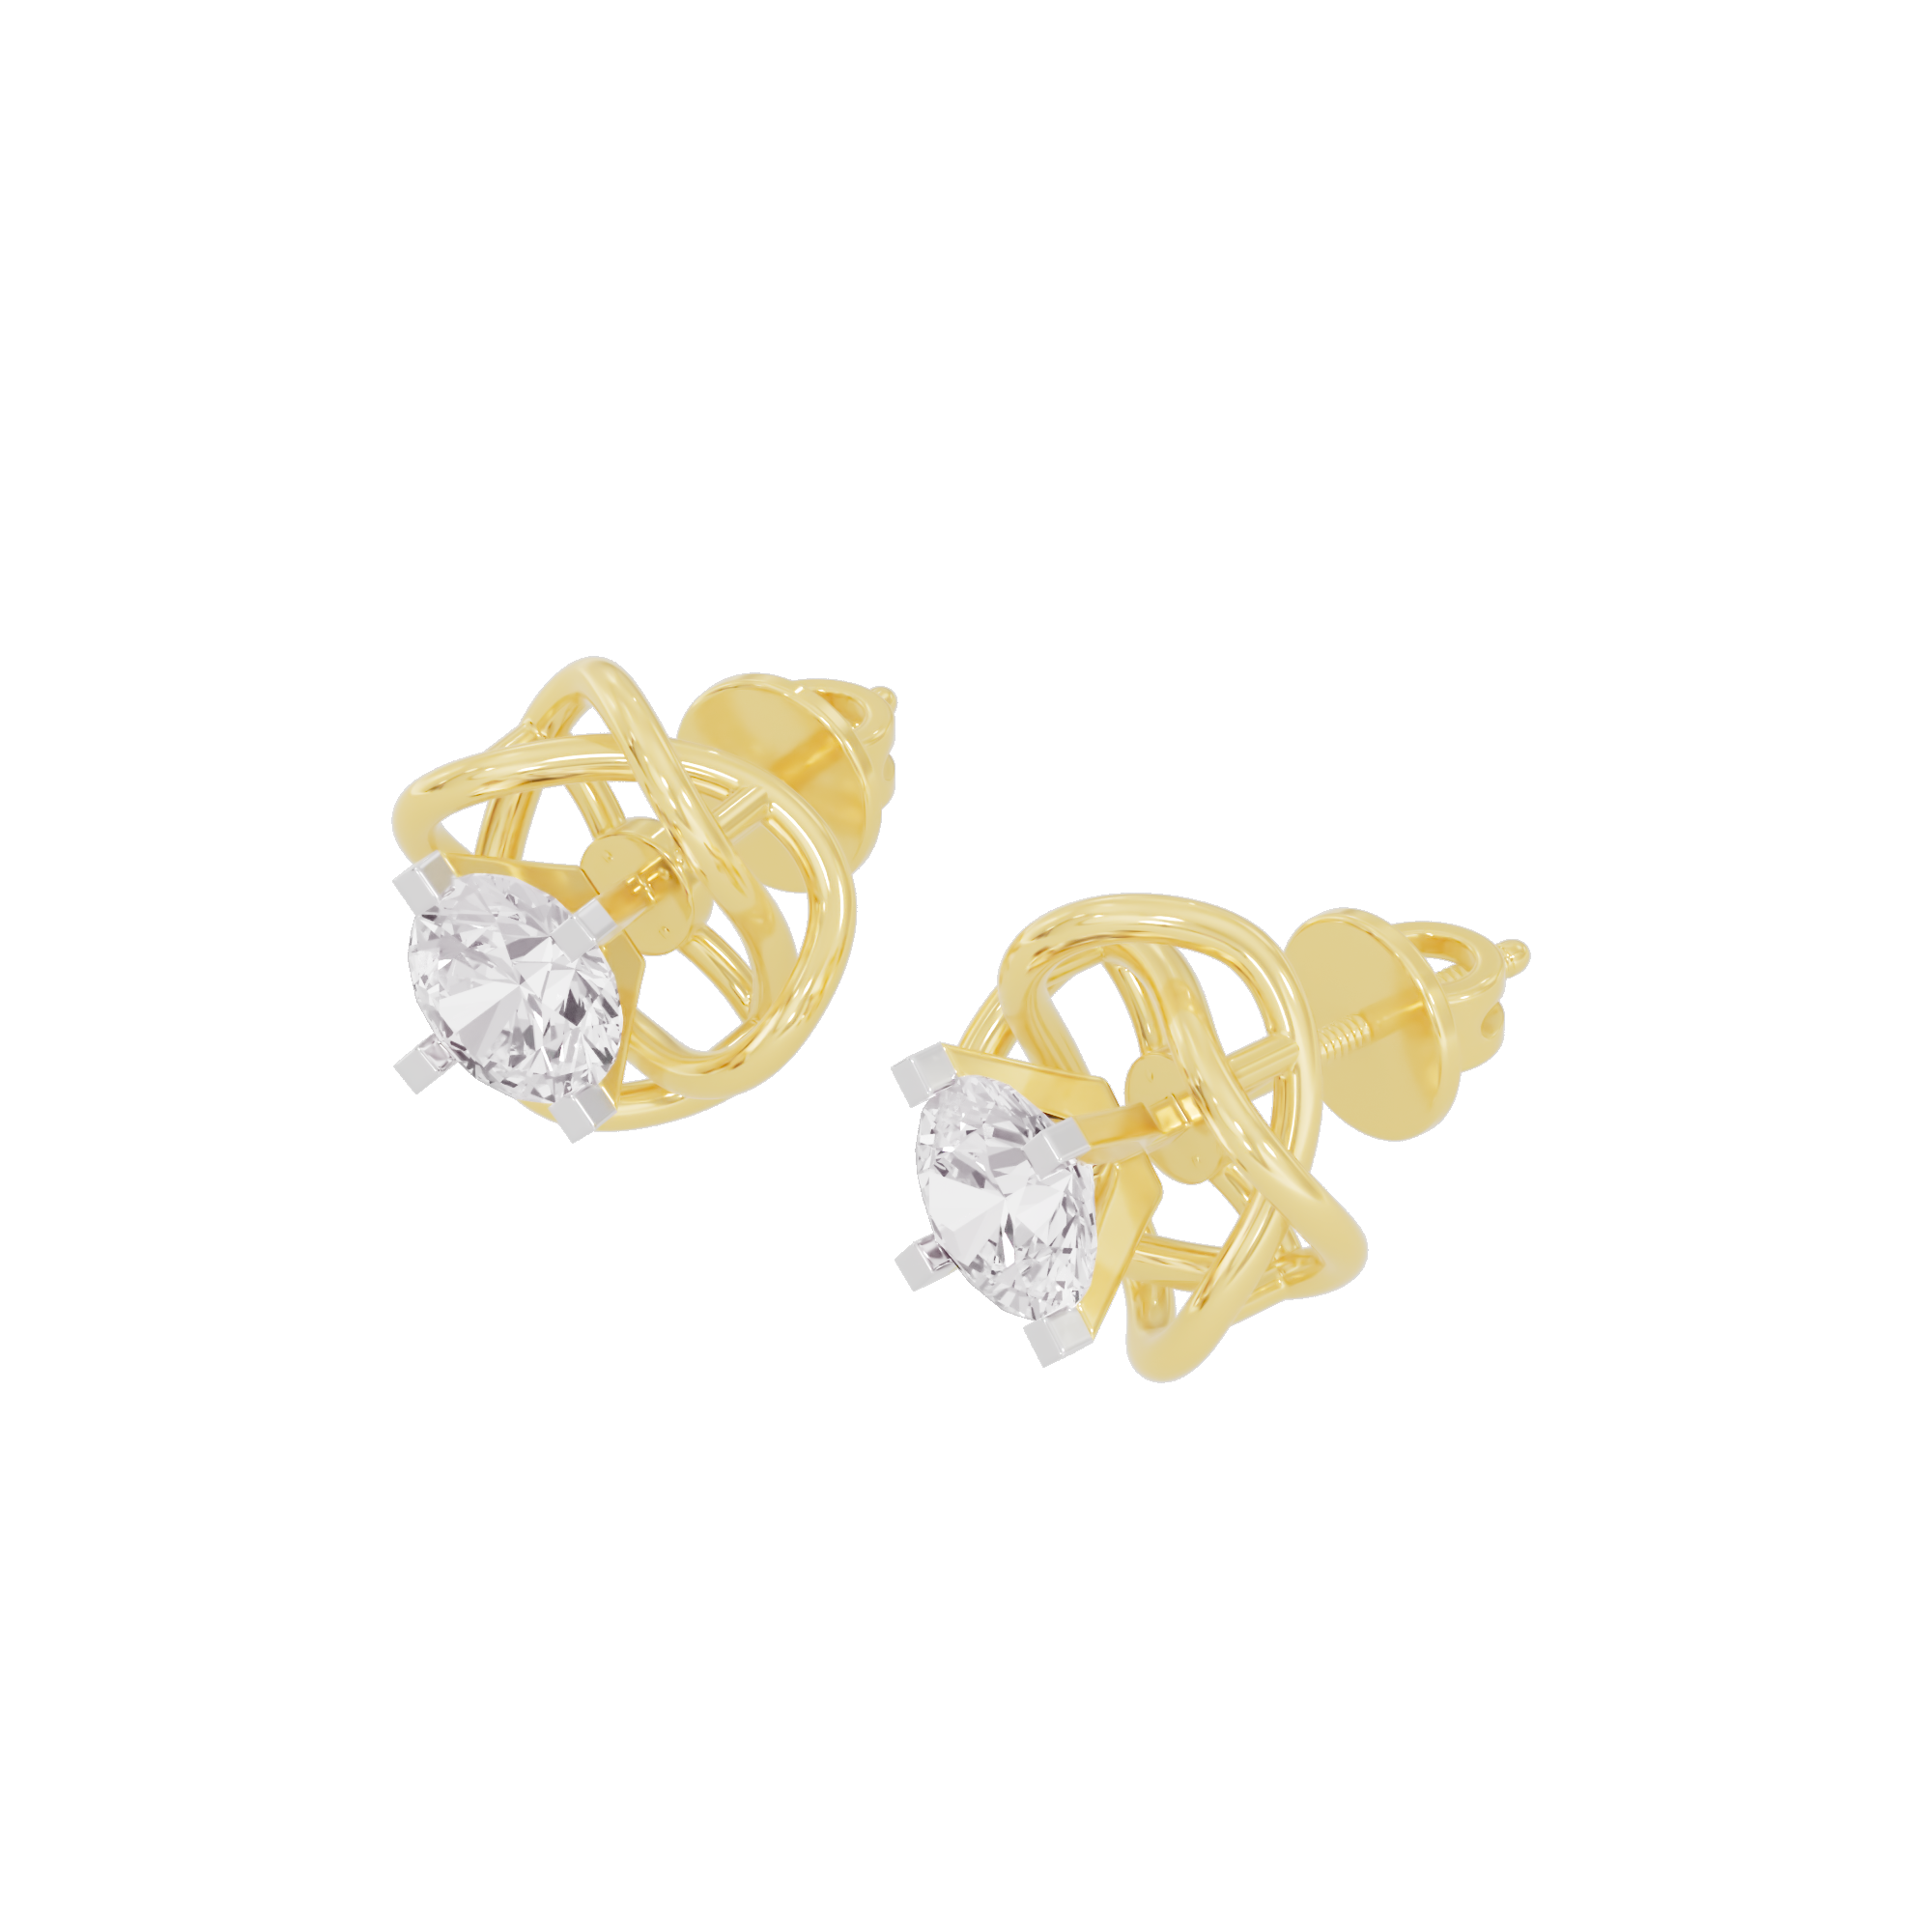 Regal Resplendence Diamond Earrings